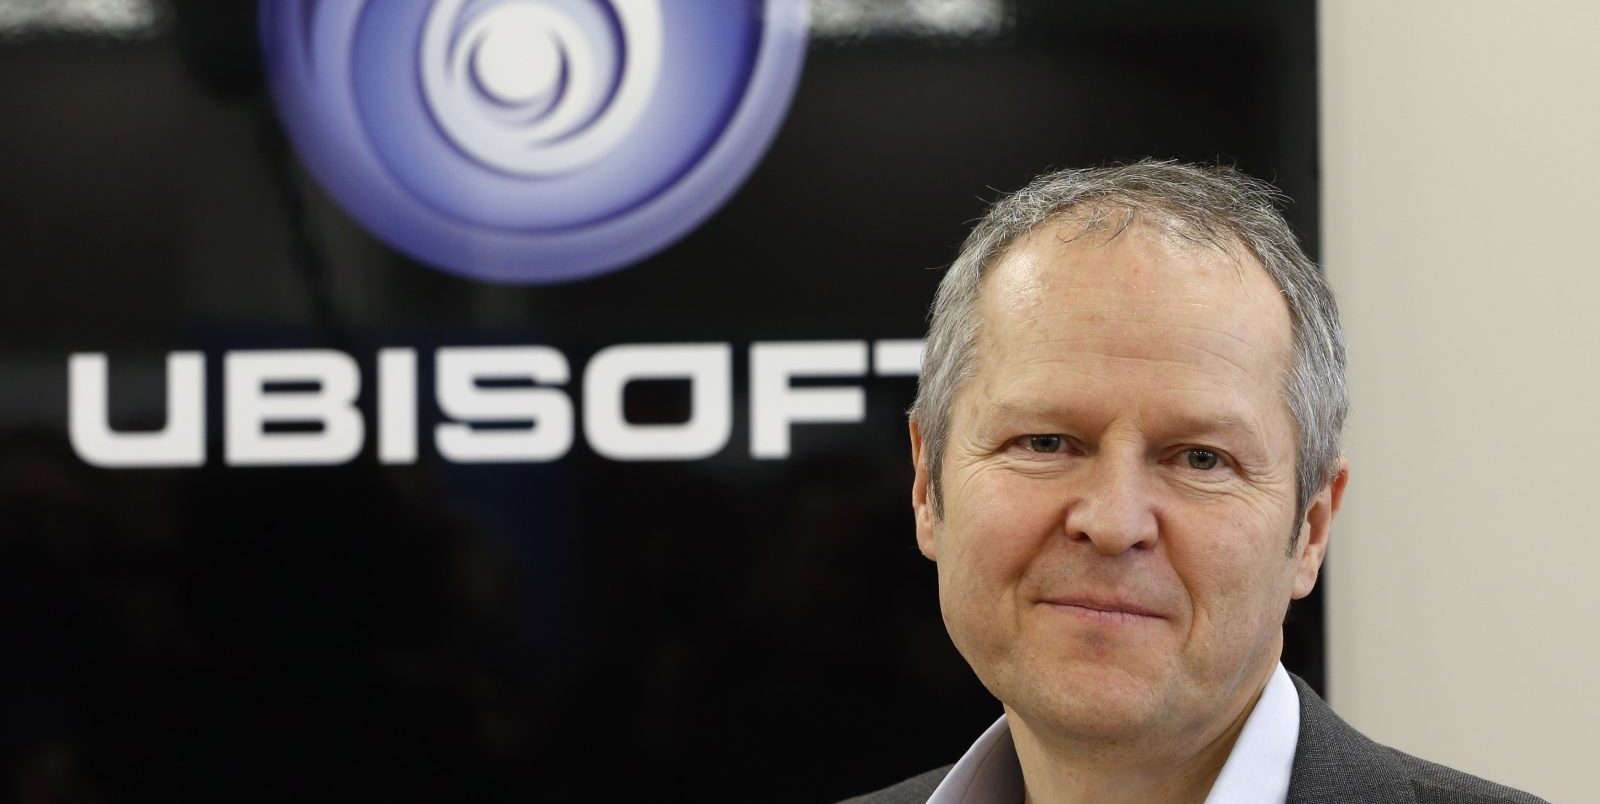 Ubisoft suspende las bonificaciones del CEO basadas en la diversidad de género, GamersRD